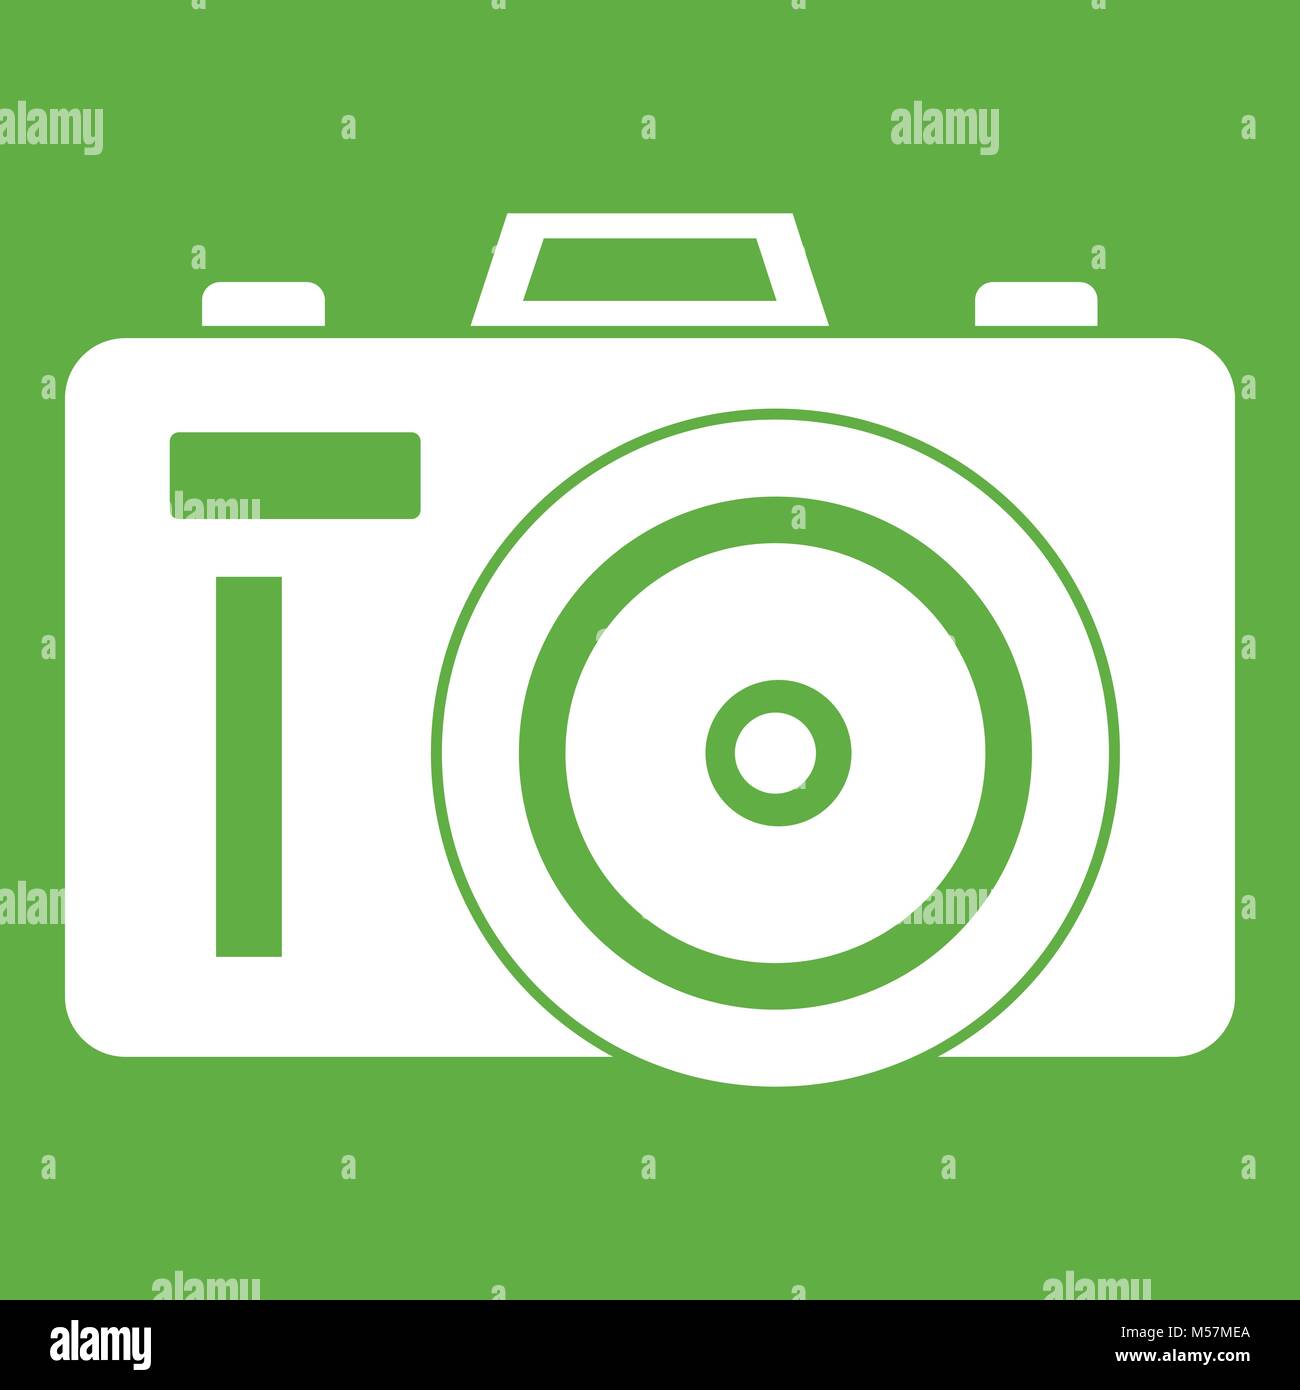 Photocamera icon green Stock Vector